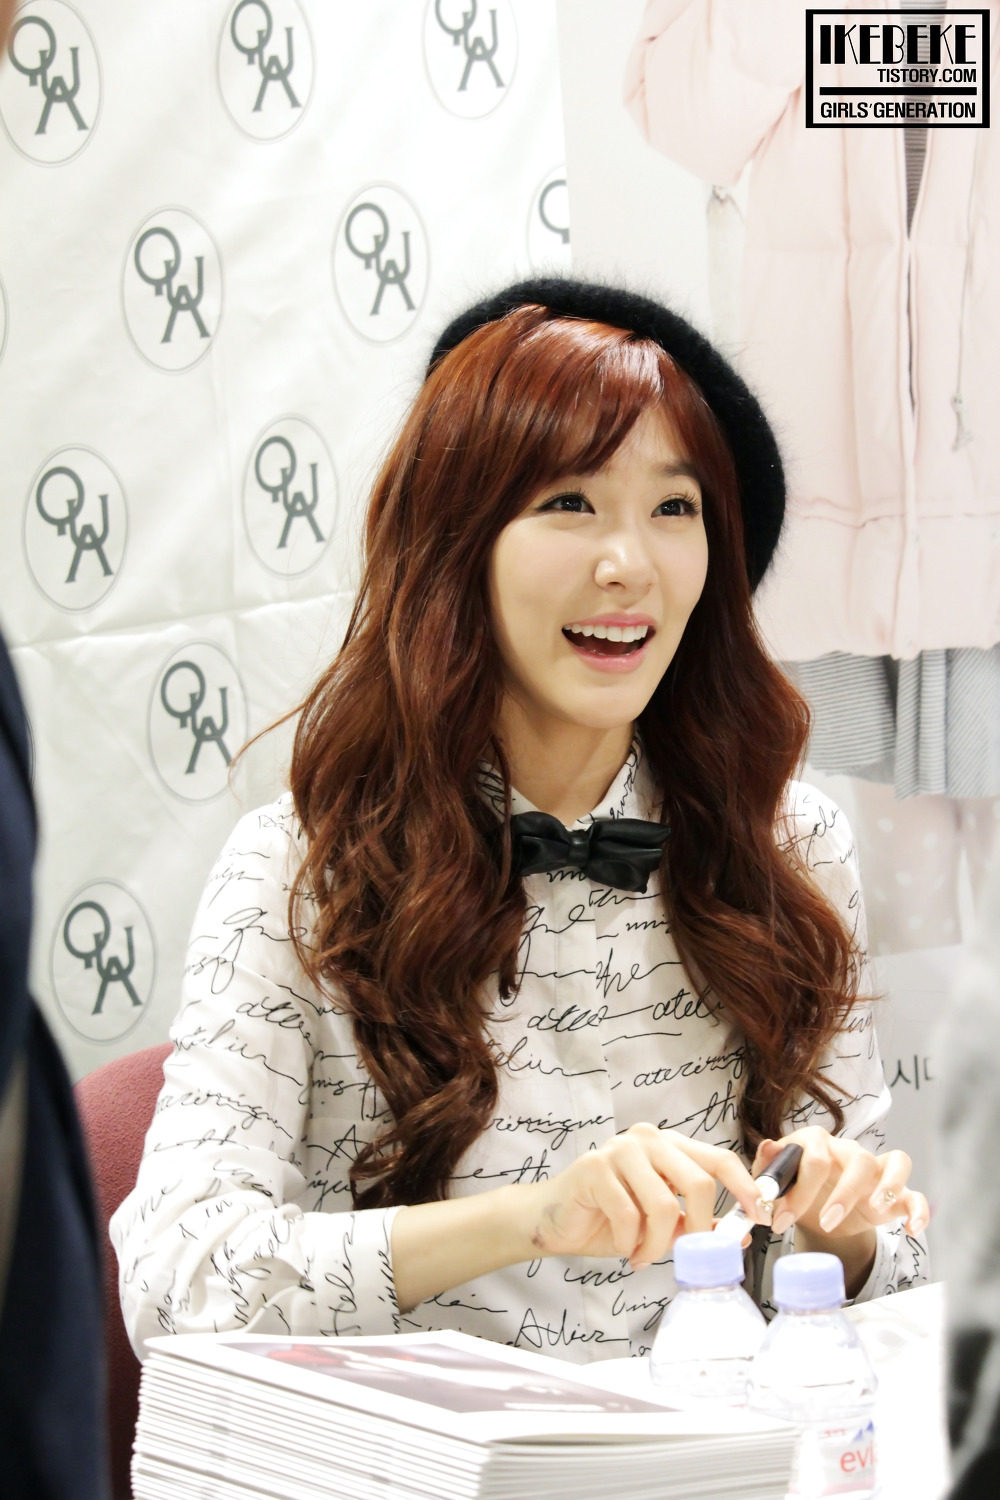 [PIC][07-11-2013]Tiffany xuất hiện tại buổi fansign cho thương hiệu "QUA" vào chiều nay 21309F49527BB6C706EB9F